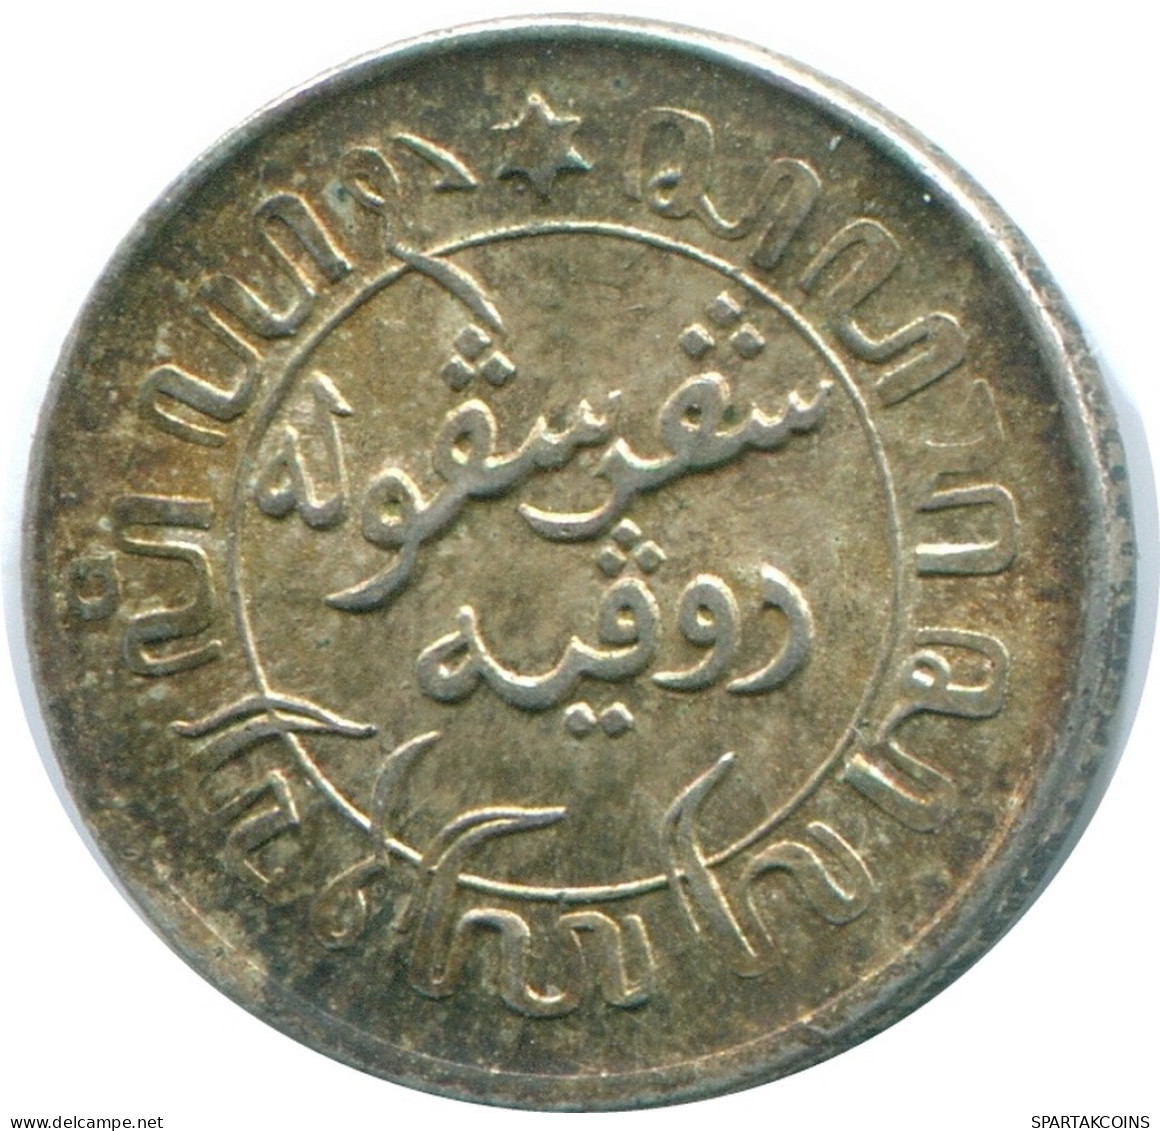 1/10 GULDEN 1945 P NETHERLANDS EAST INDIES SILVER Colonial Coin #NL14161.3.U.A - Niederländisch-Indien